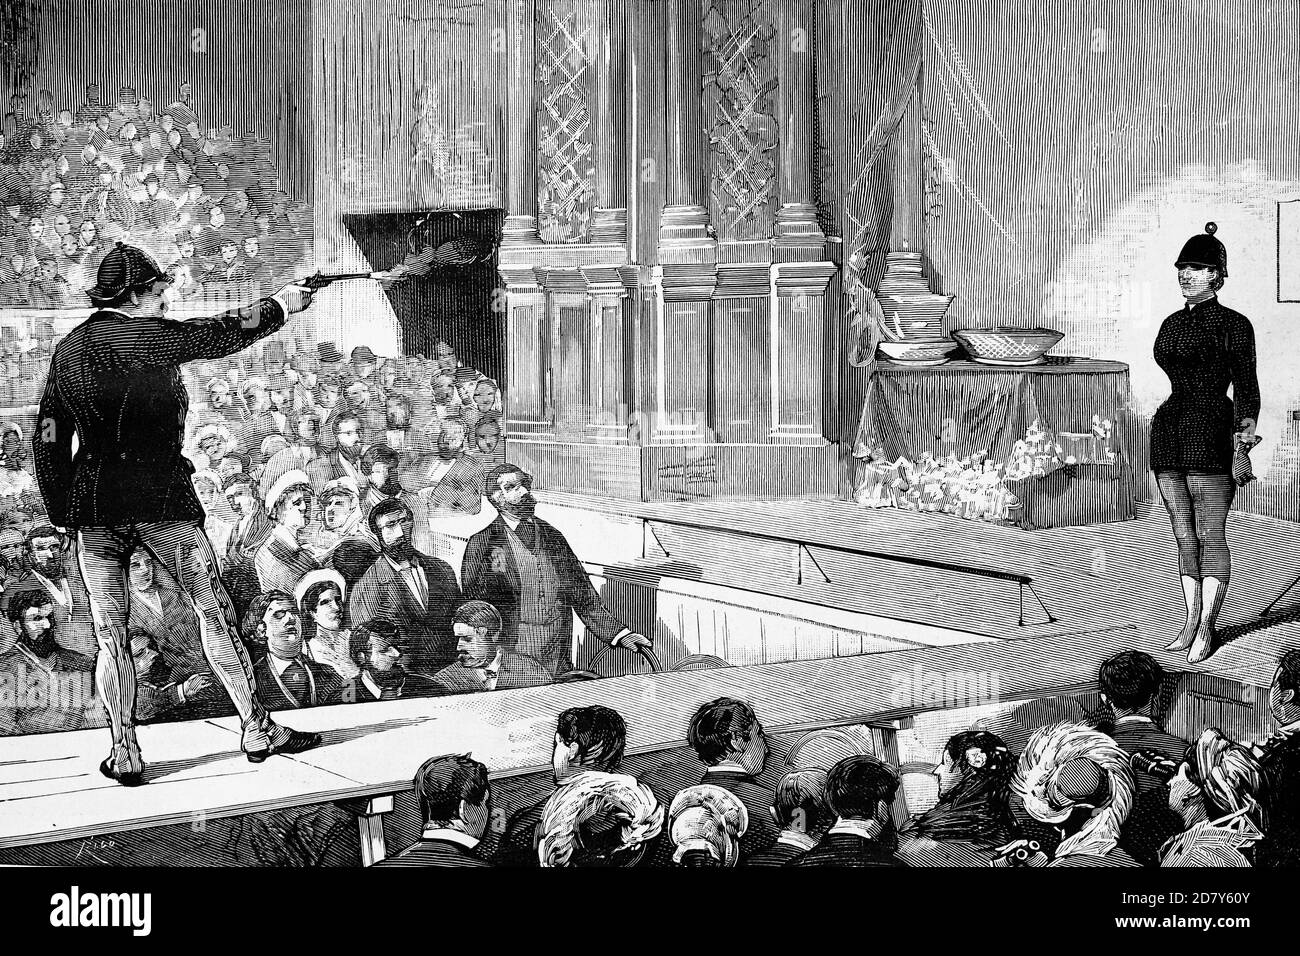 Madrid, Spagna, Circus Price, lo sparatutto americano MR. Paine che esegue le sue esercitazioni rischiose con sua moglie come assistente. Illustrazione antica. 1882. Foto Stock